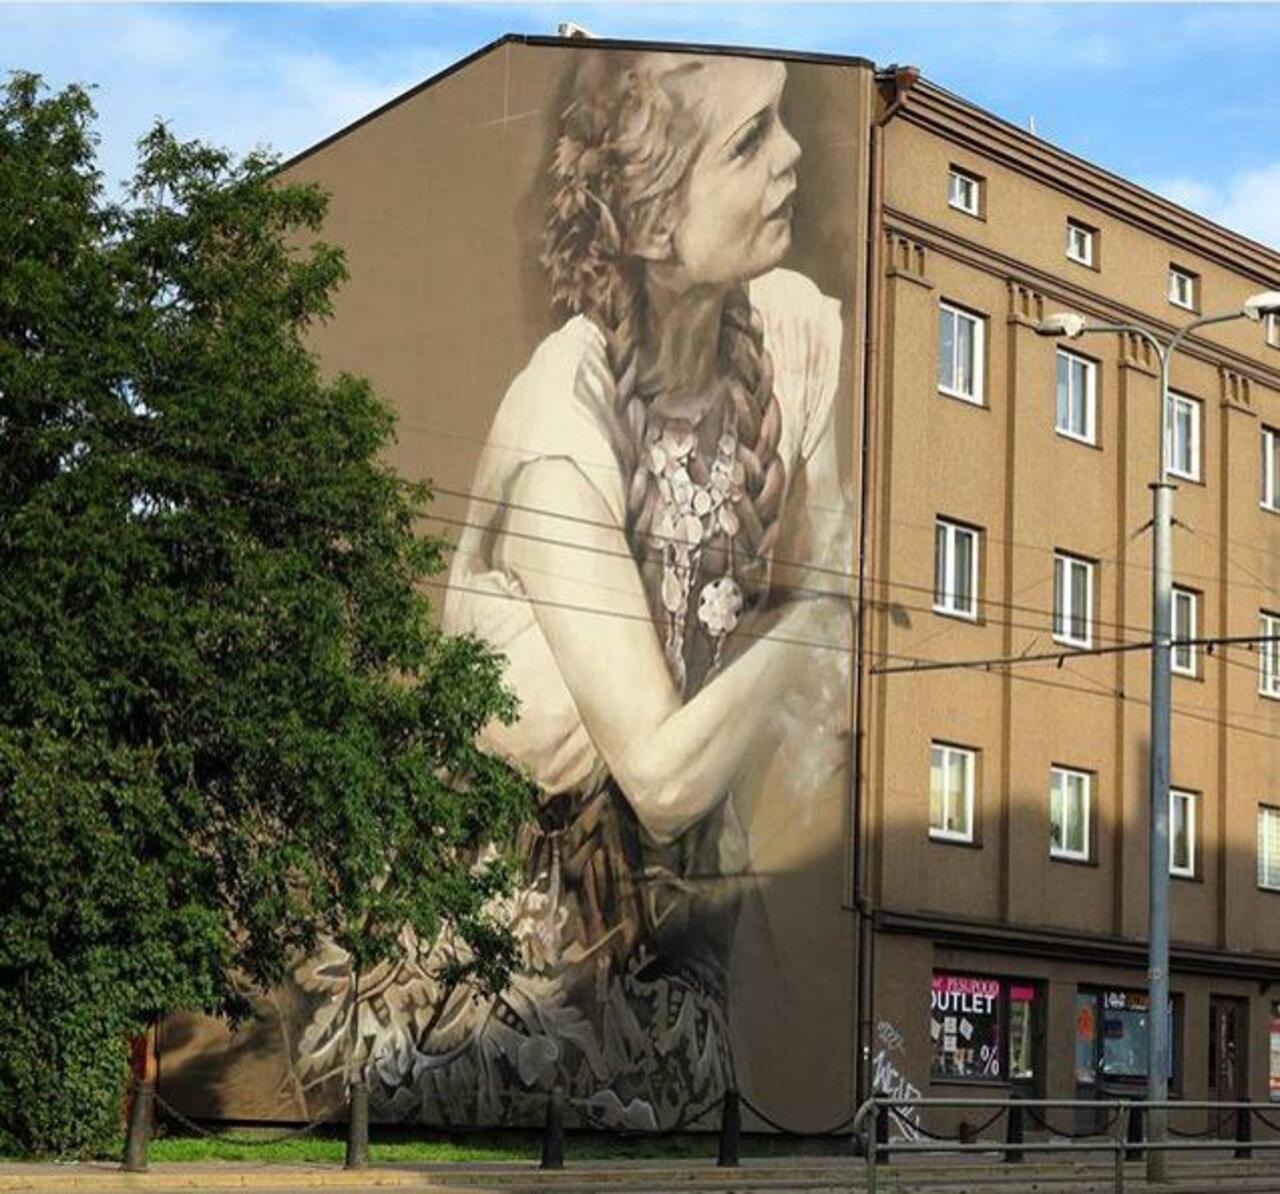 RT @GoogleStreetArt: Just completed Street Art from Guido Van Helten in Tallinn, Estonia 

#art #mural #graffiti #streetart http://t.co/yVdtIDQrly